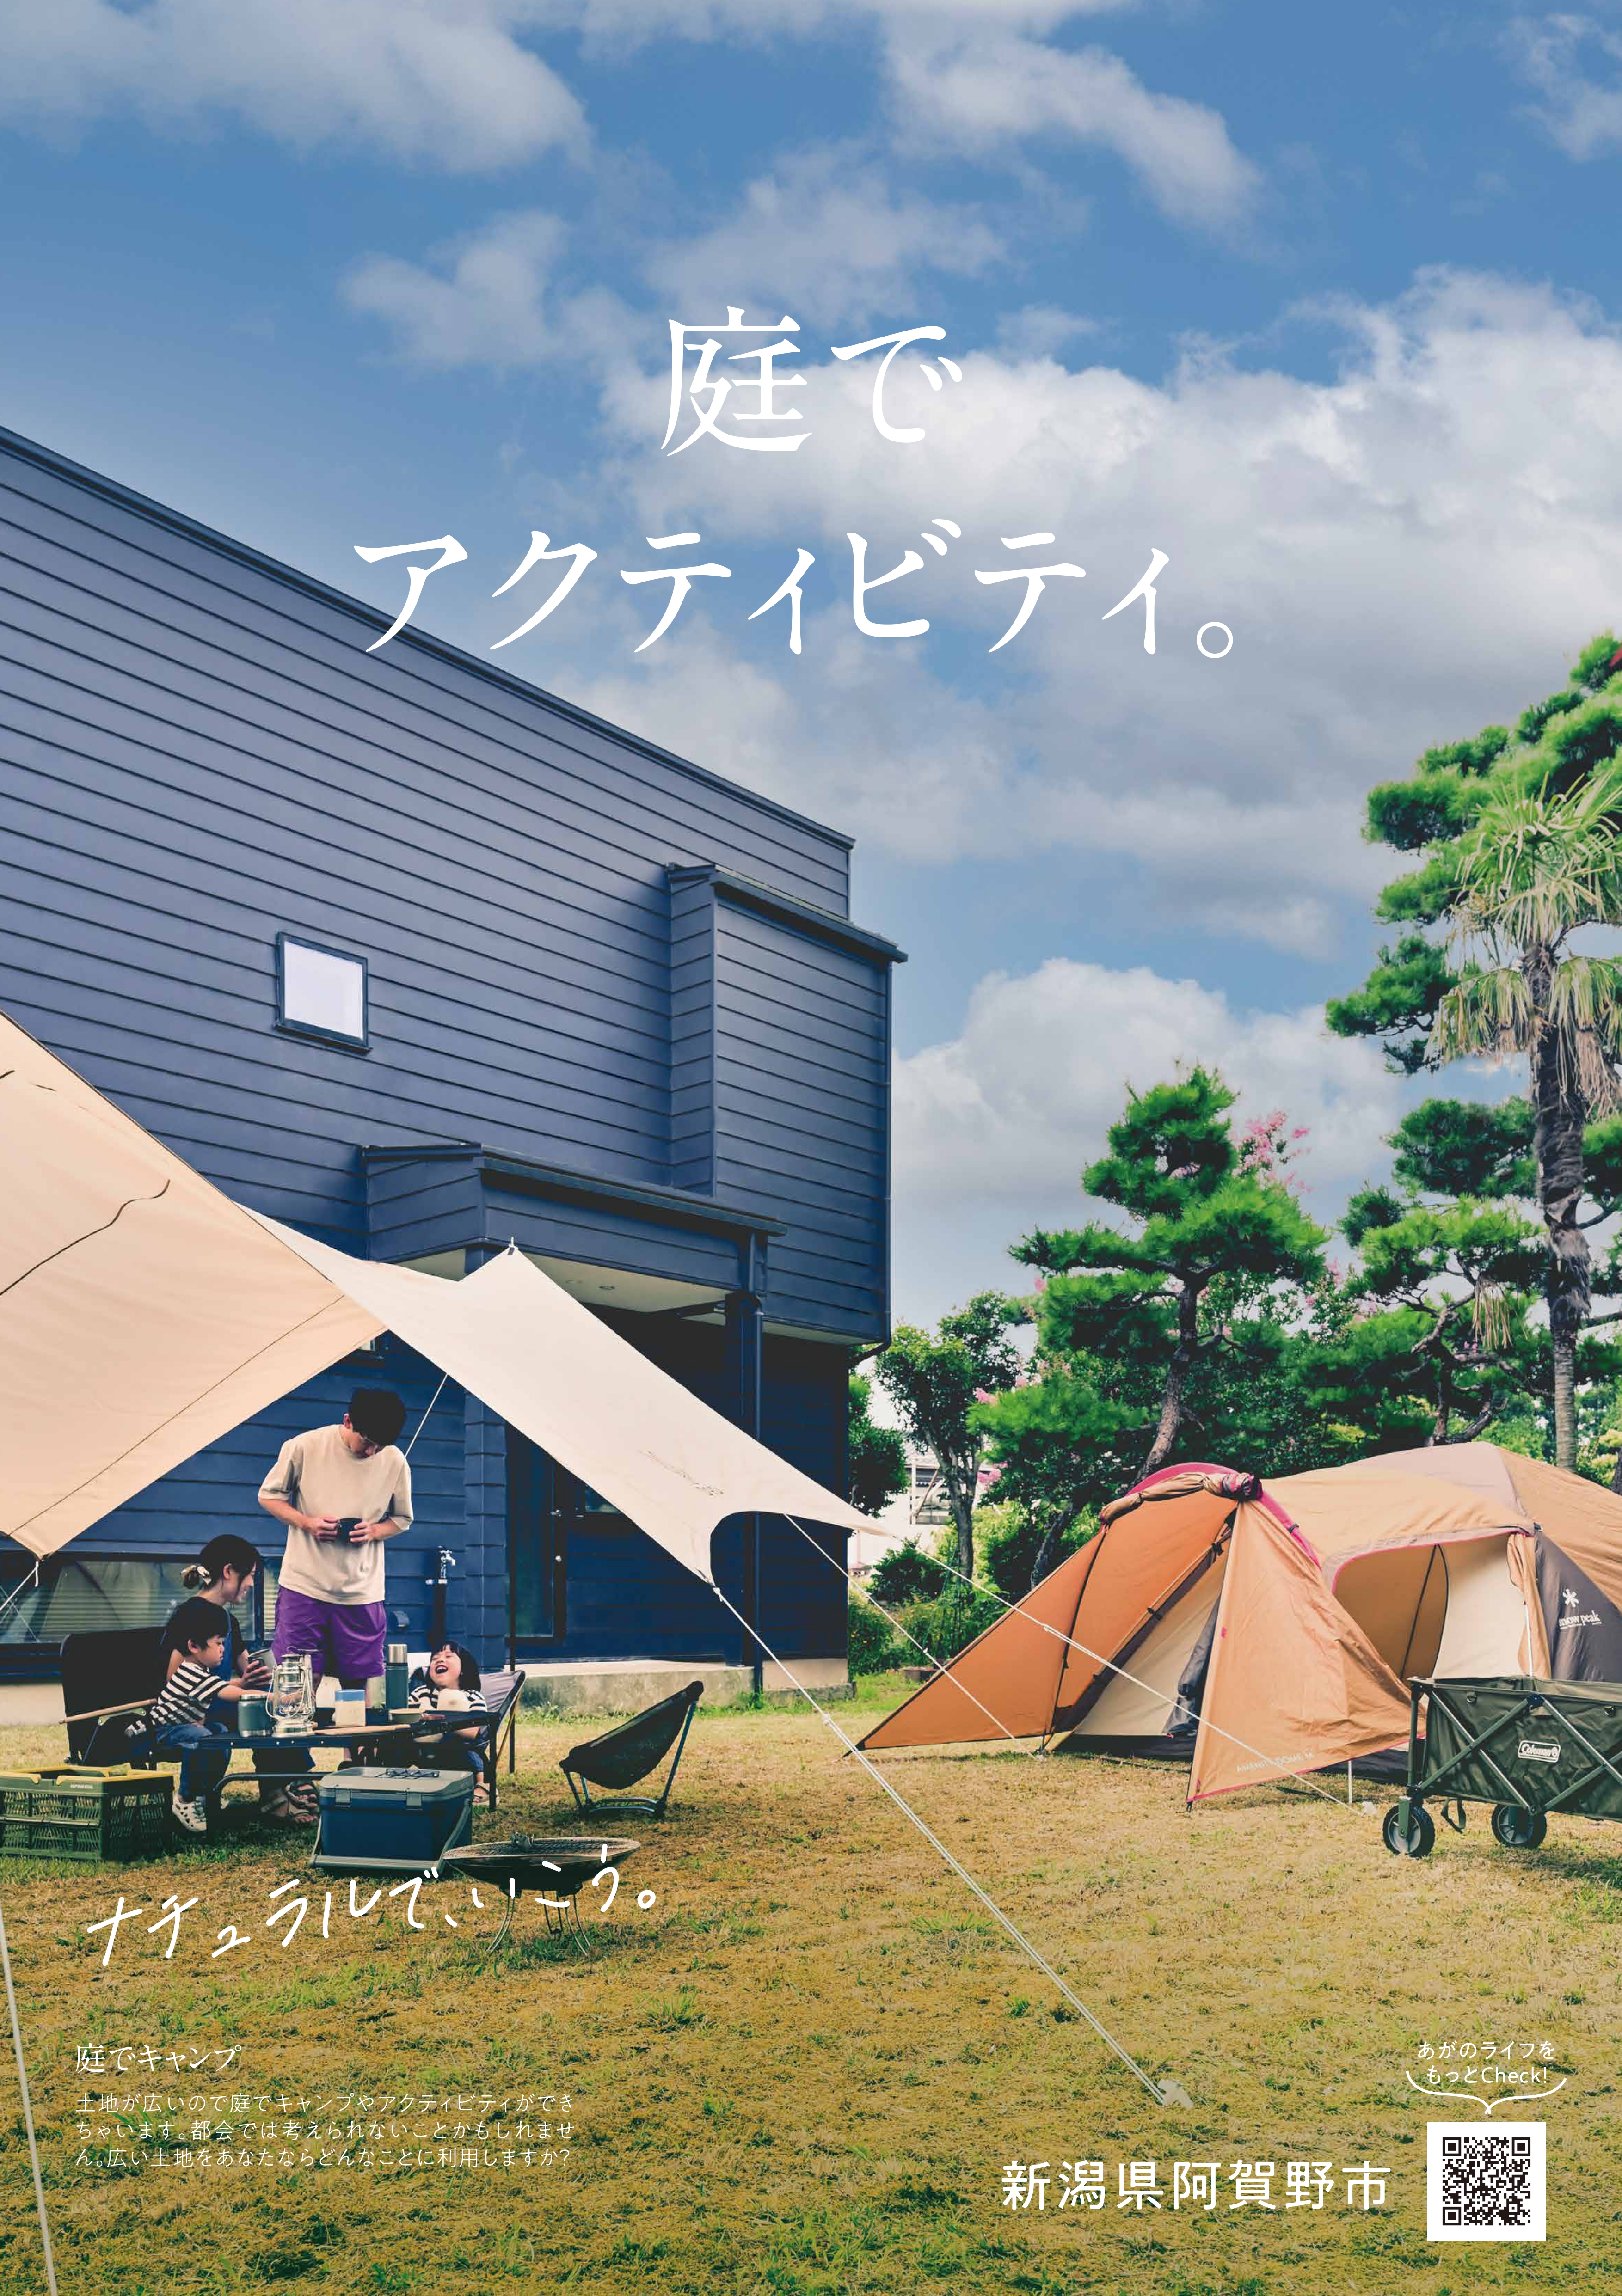 阿賀野市移住促進ポスター「ナチュラルでいこう。」